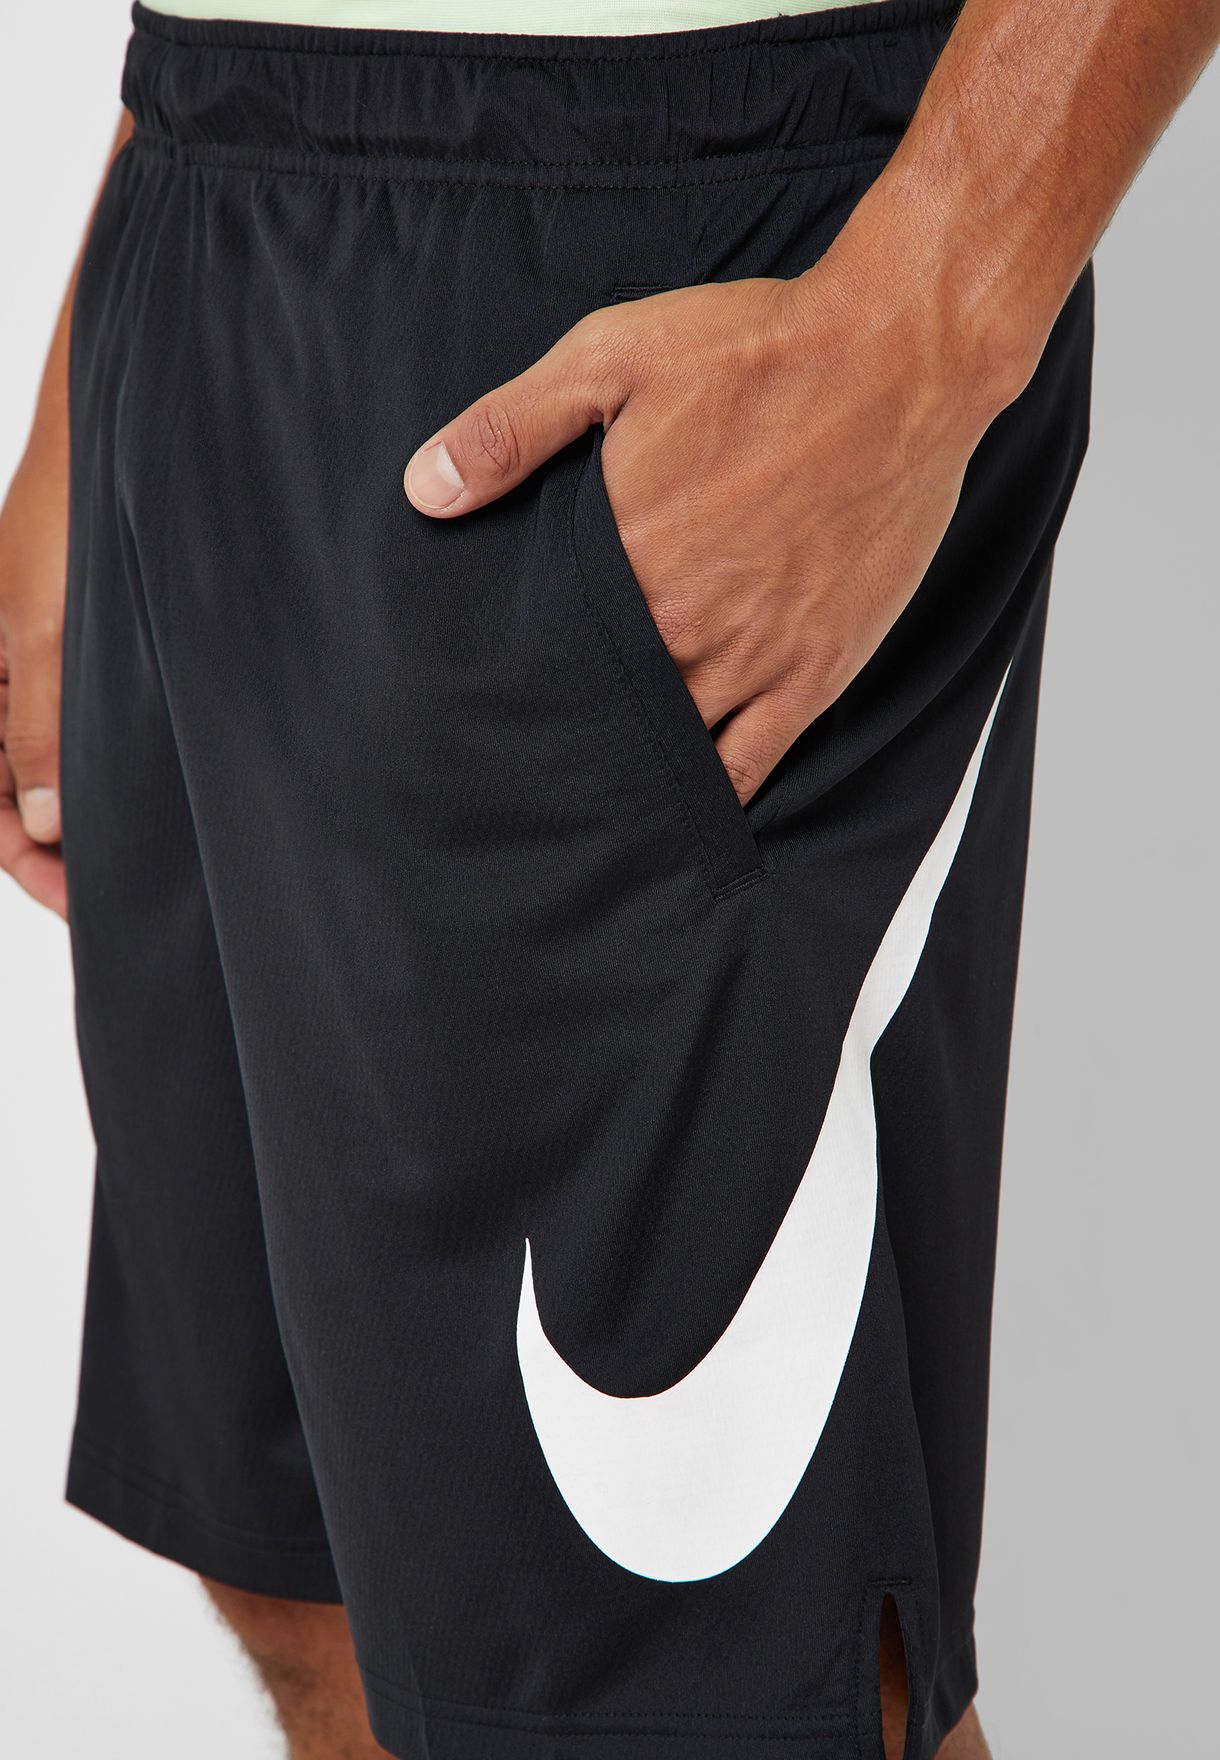 Buy Nike black Dri-FIT 4.0 Shorts for 